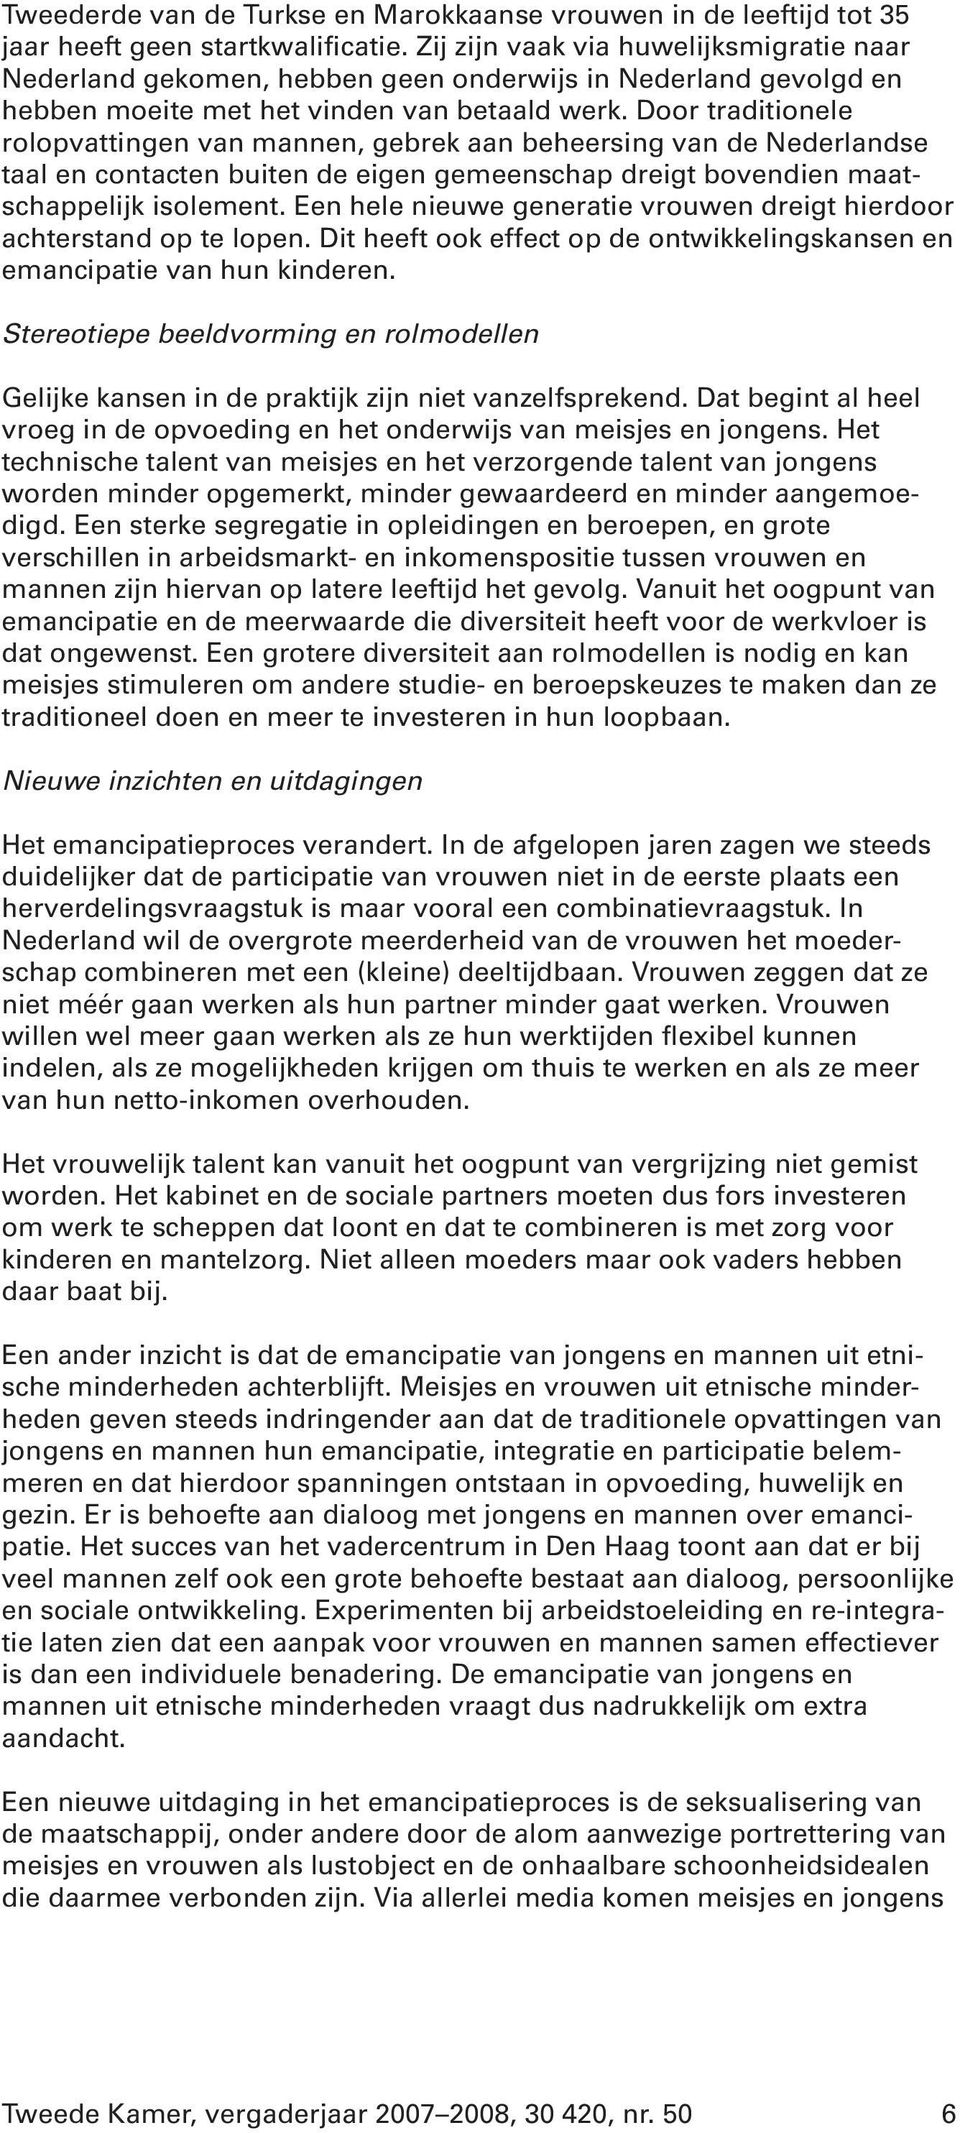 Door traditionele rolopvattingen van mannen, gebrek aan beheersing van de Nederlandse taal en contacten buiten de eigen gemeenschap dreigt bovendien maatschappelijk isolement.